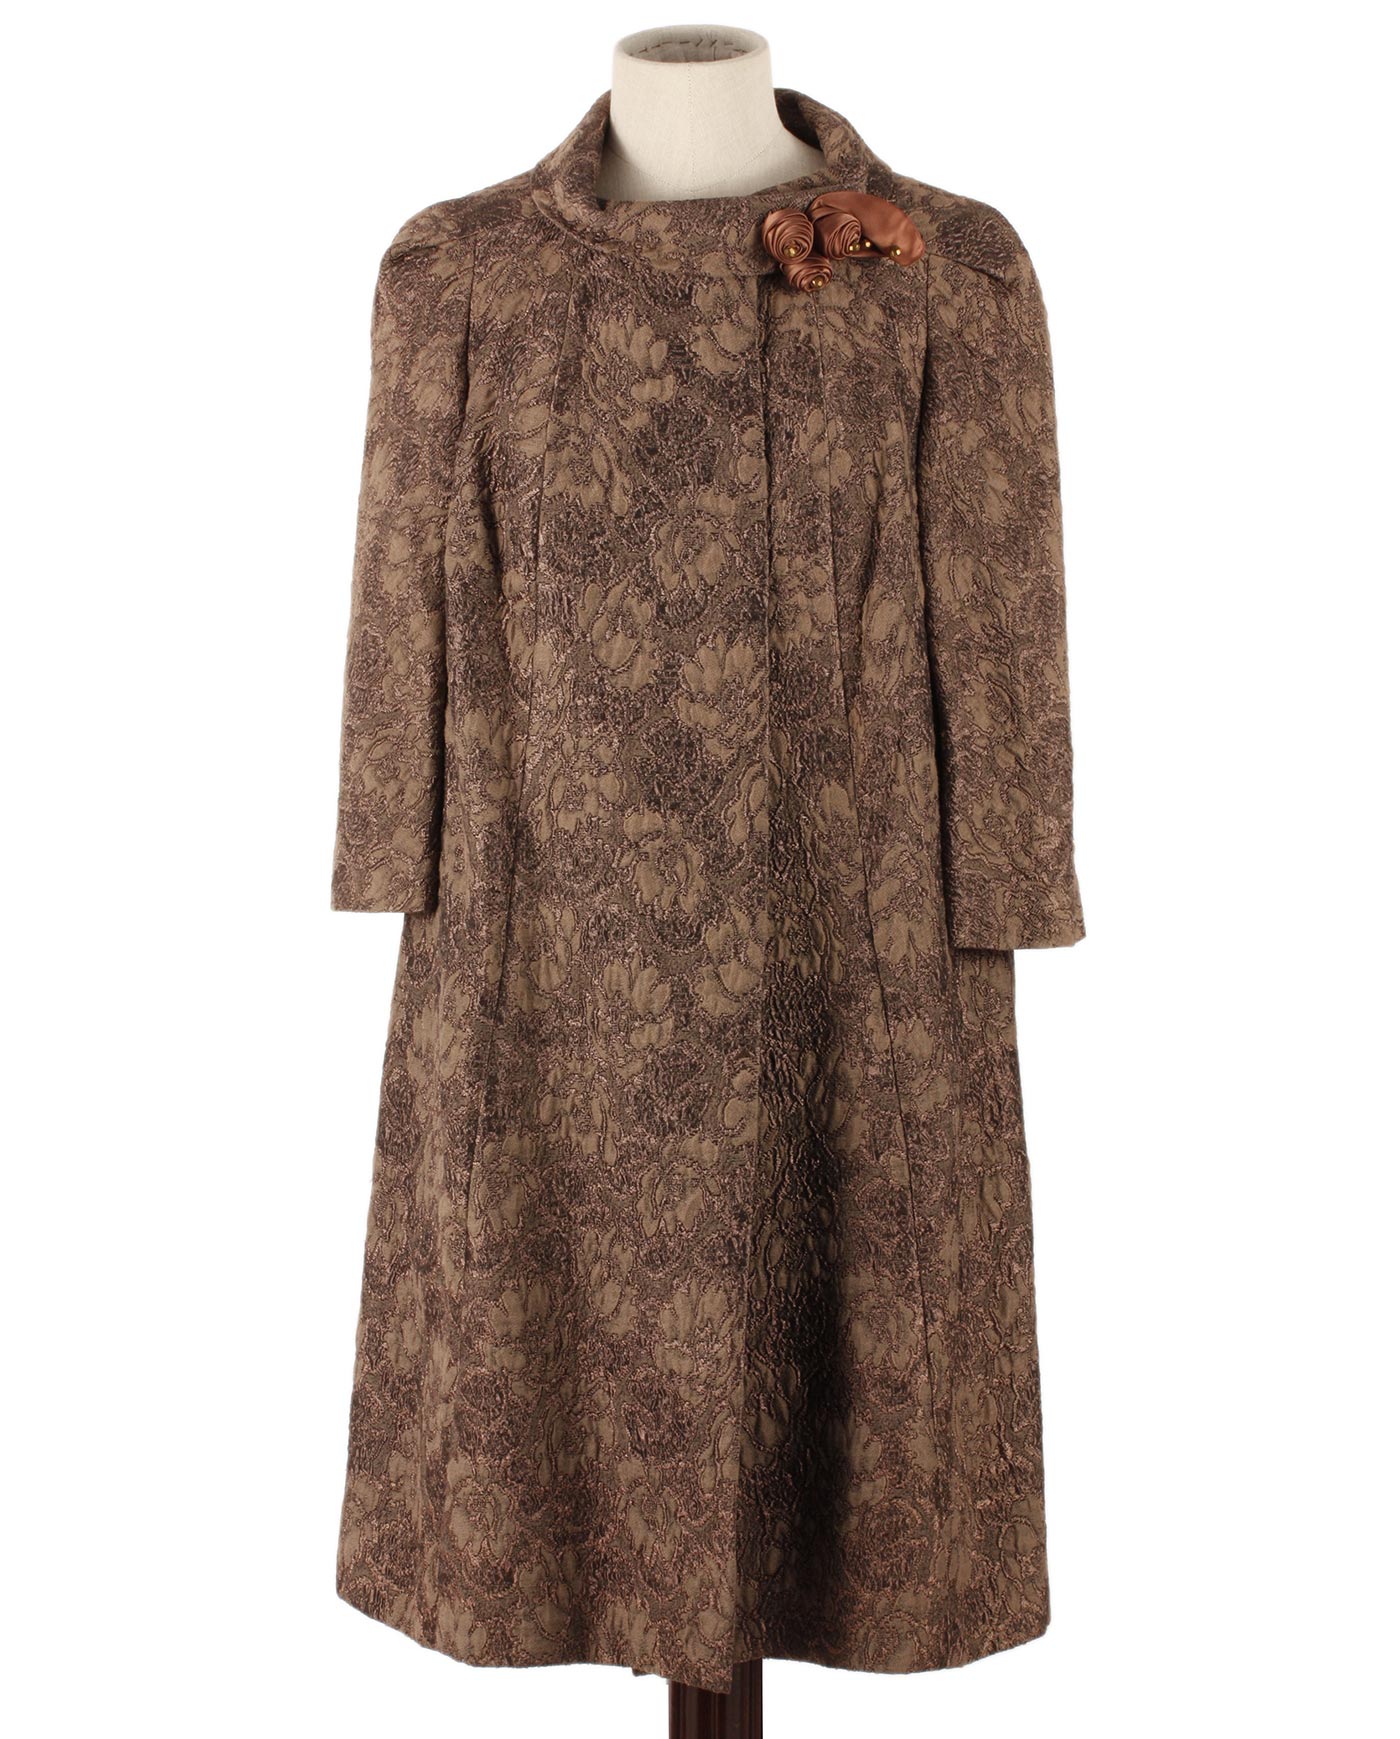 CREATION OLGA Paris brocade fabric coat 50s